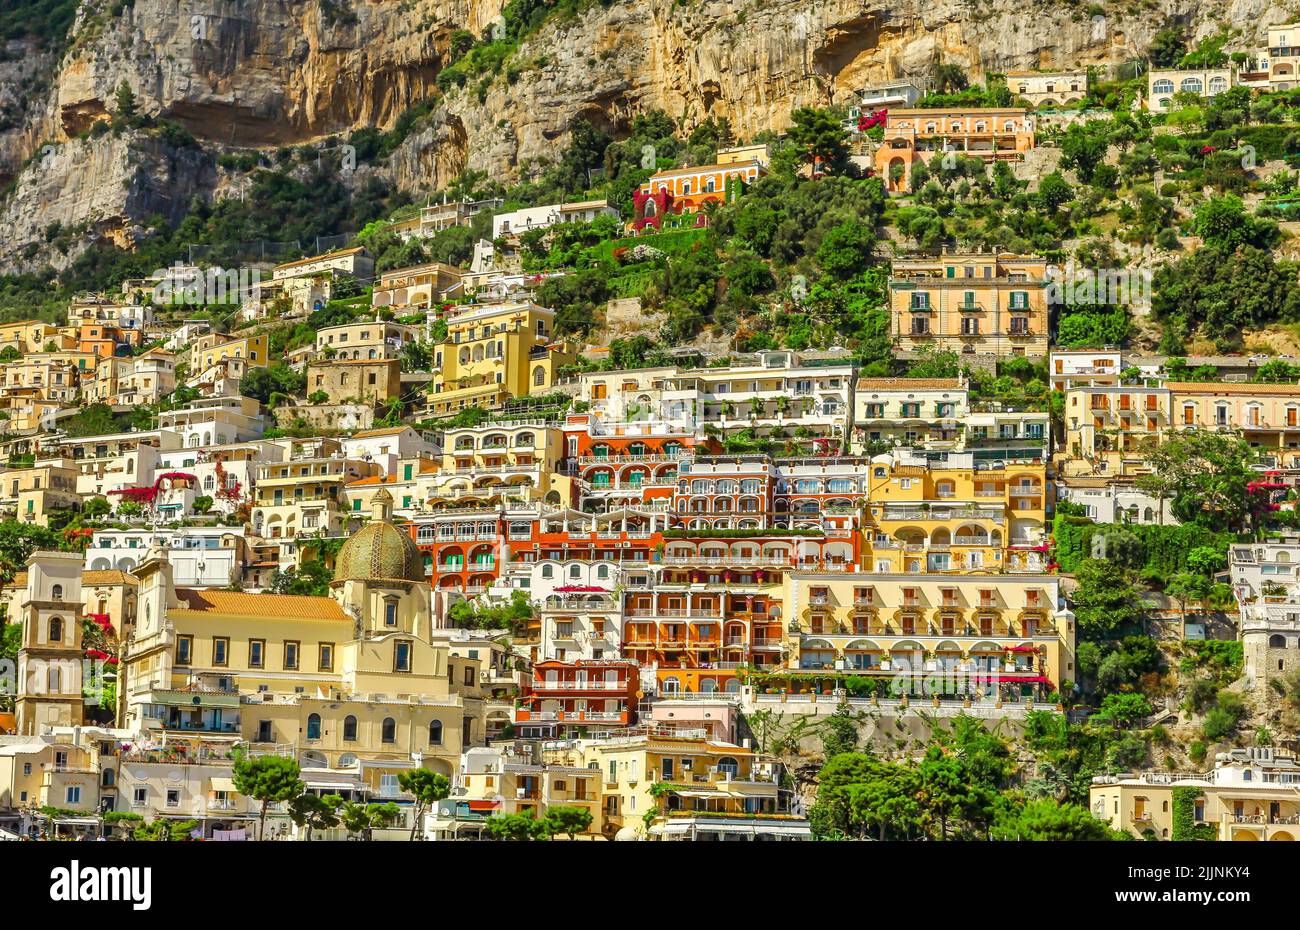 Eine Luftaufnahme der Stadt Positano an der Amalfiküste, Italien Stockfoto